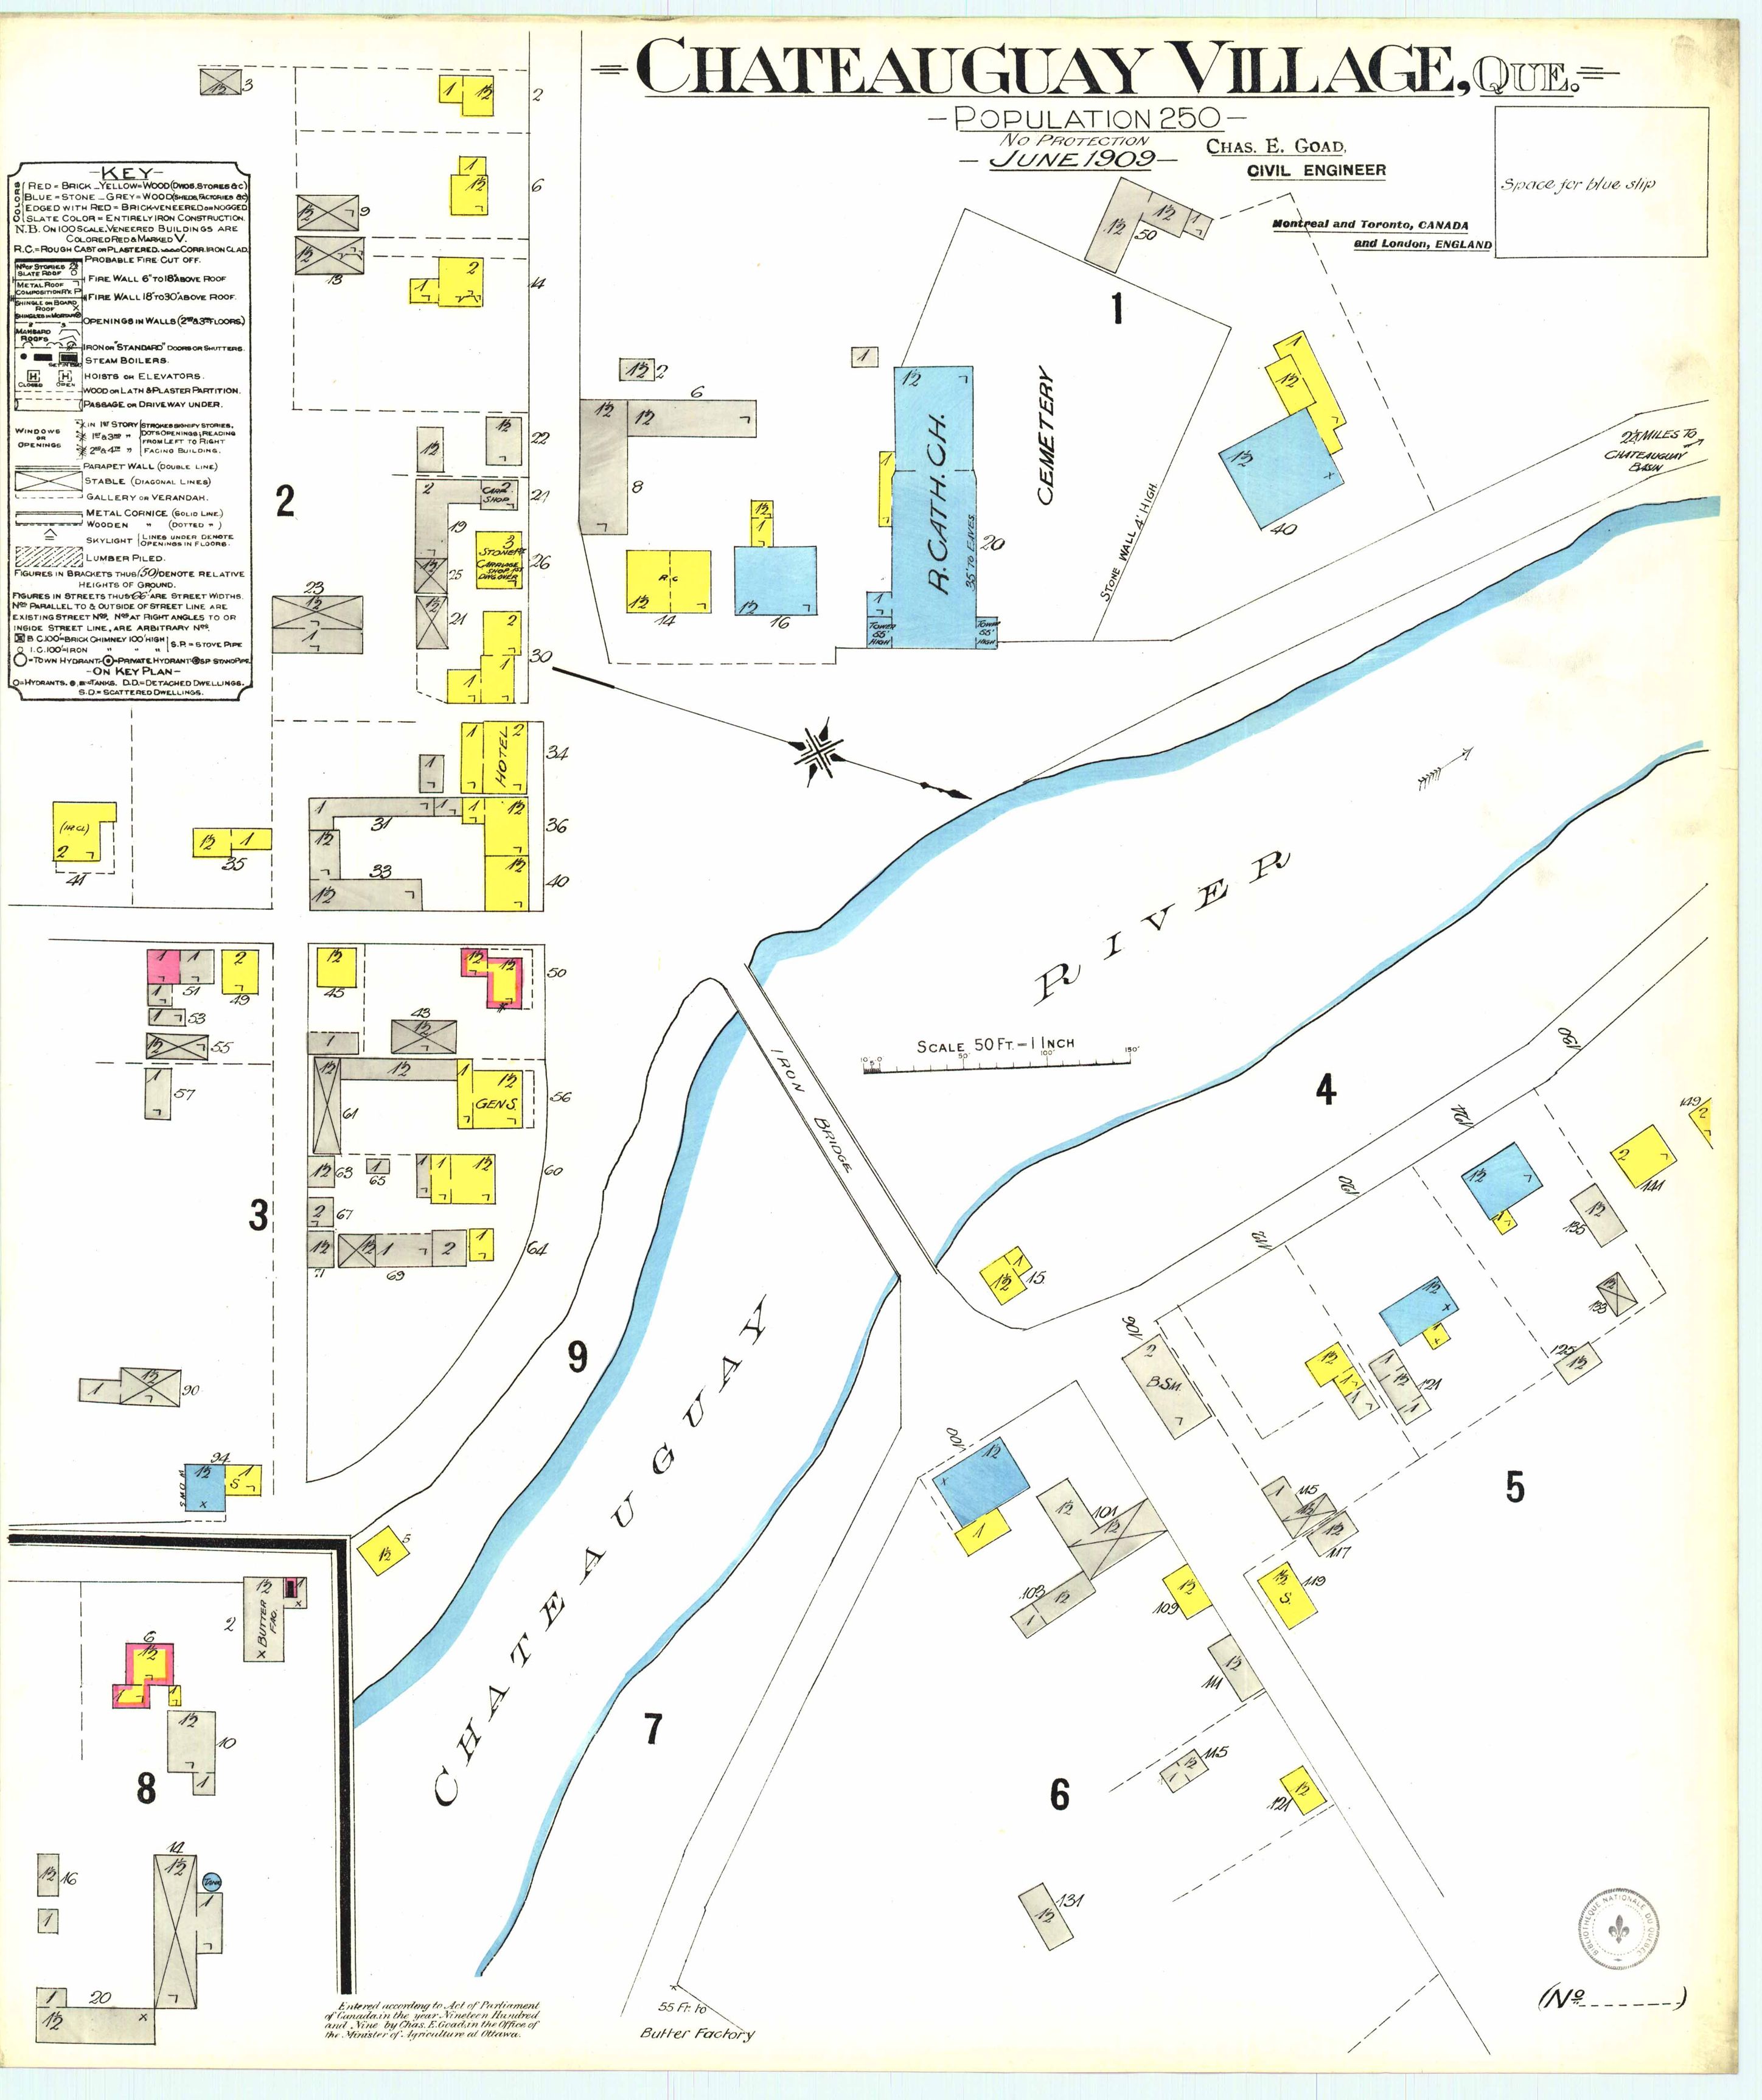 Carte géographique détaillée du village de Châteauguay